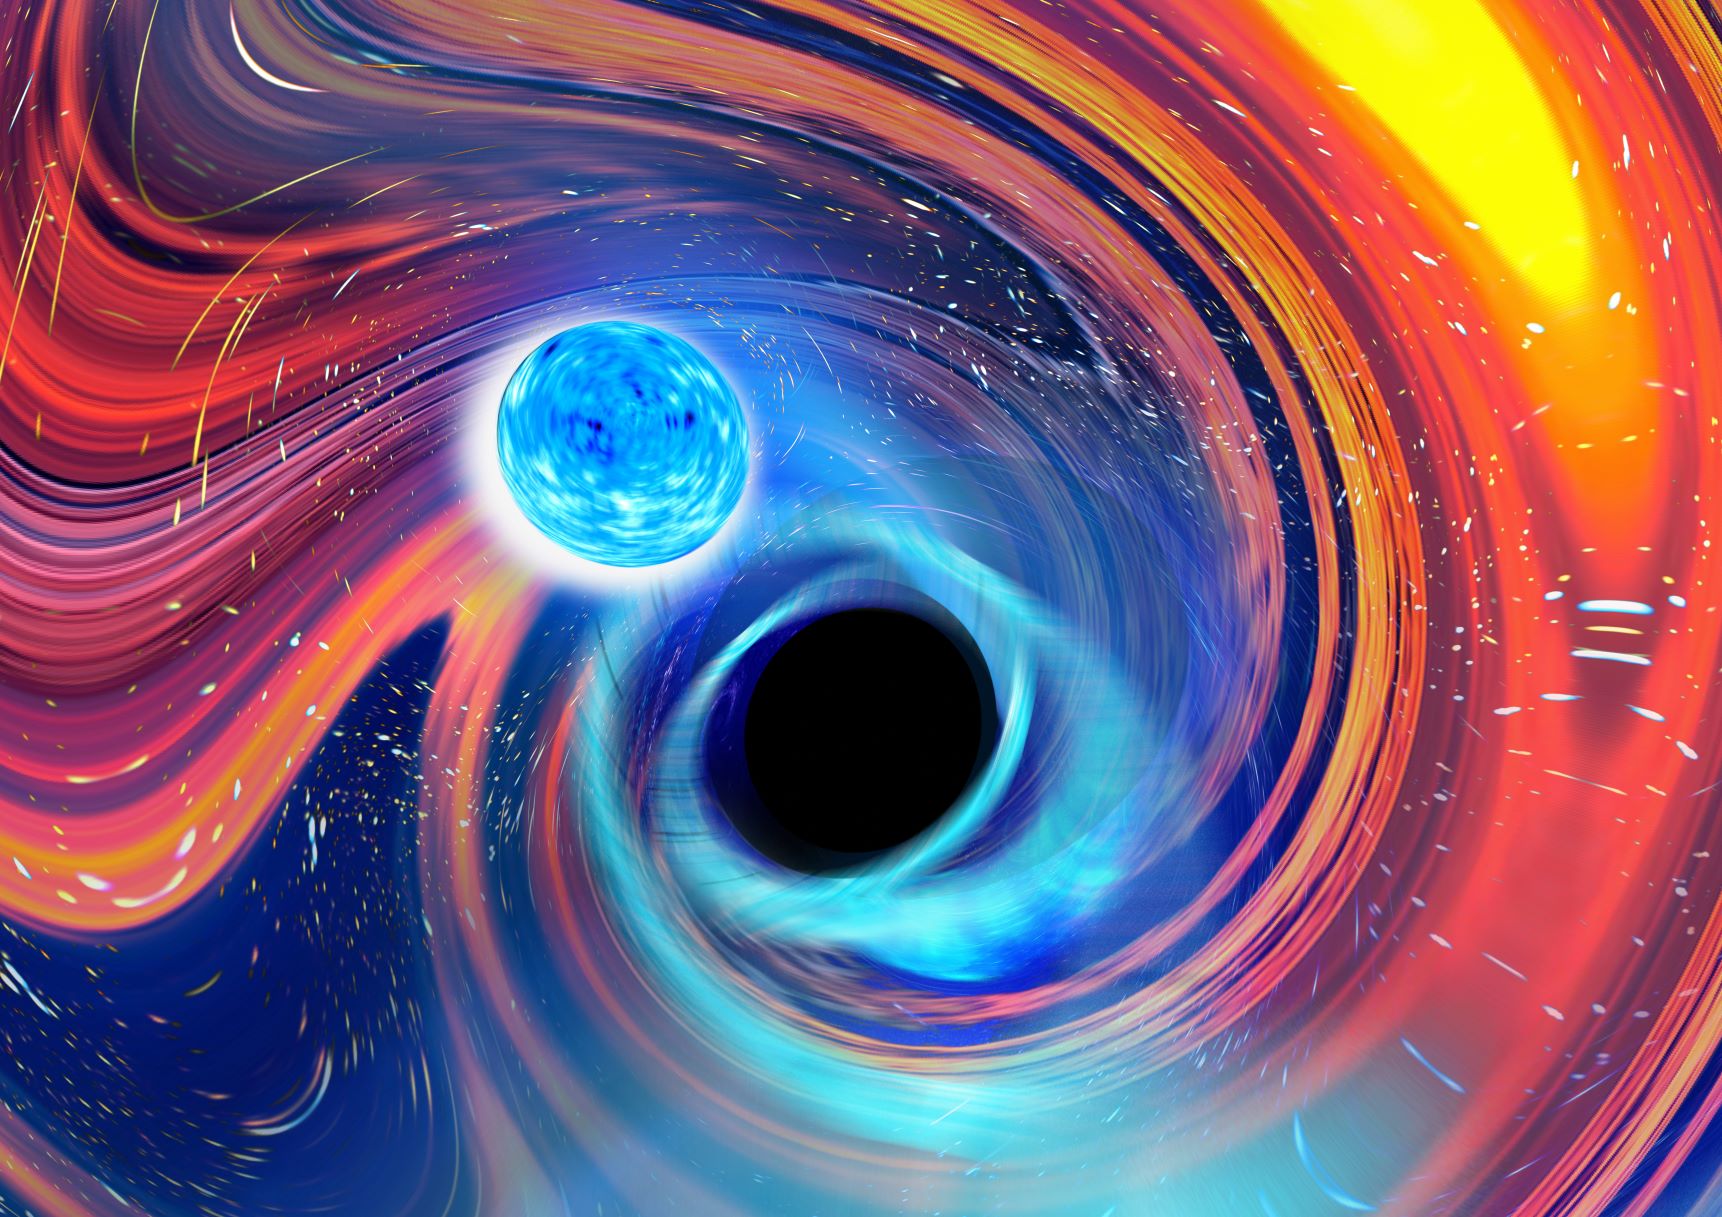 Az összeolvadó neutroncsillagok és fekete lyukak által inspirált művészi rajz